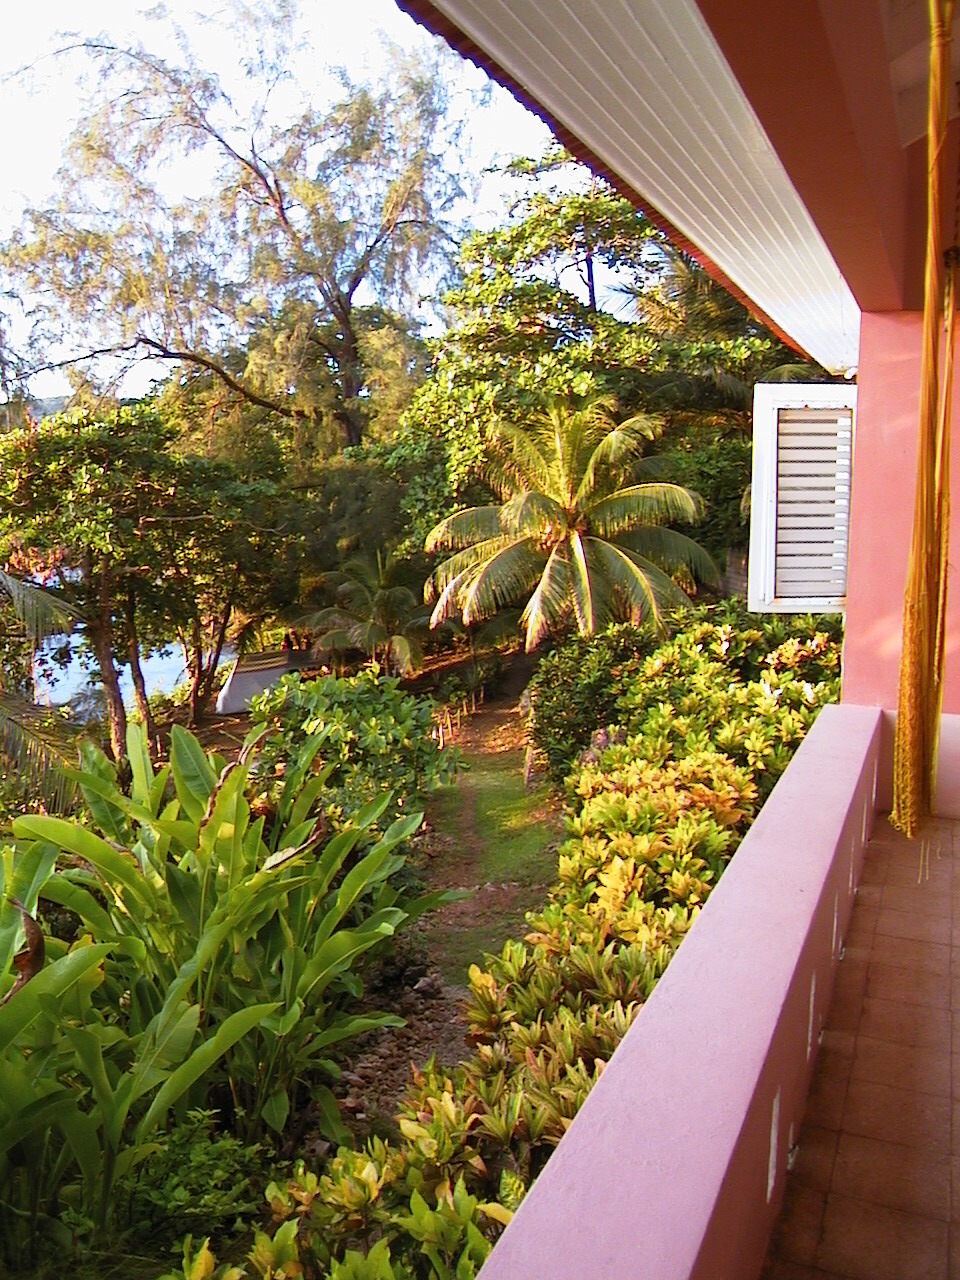 View from Veranda